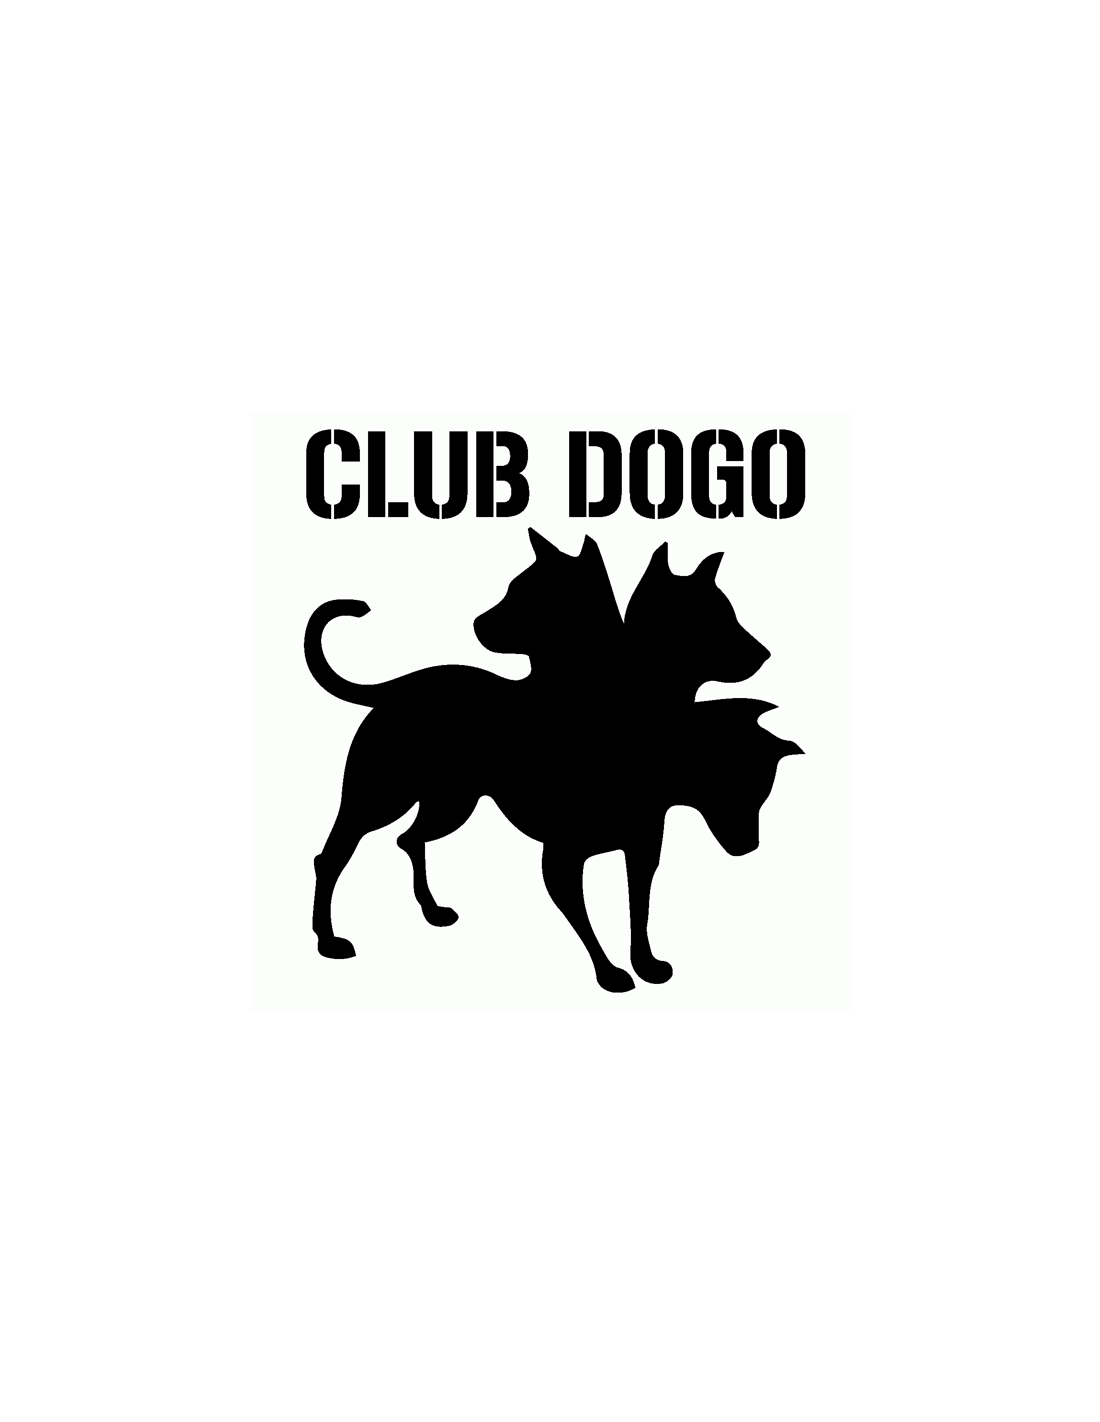 Club Dogo Logo 1 - Adesivo Prespaziato - AdesiviStore